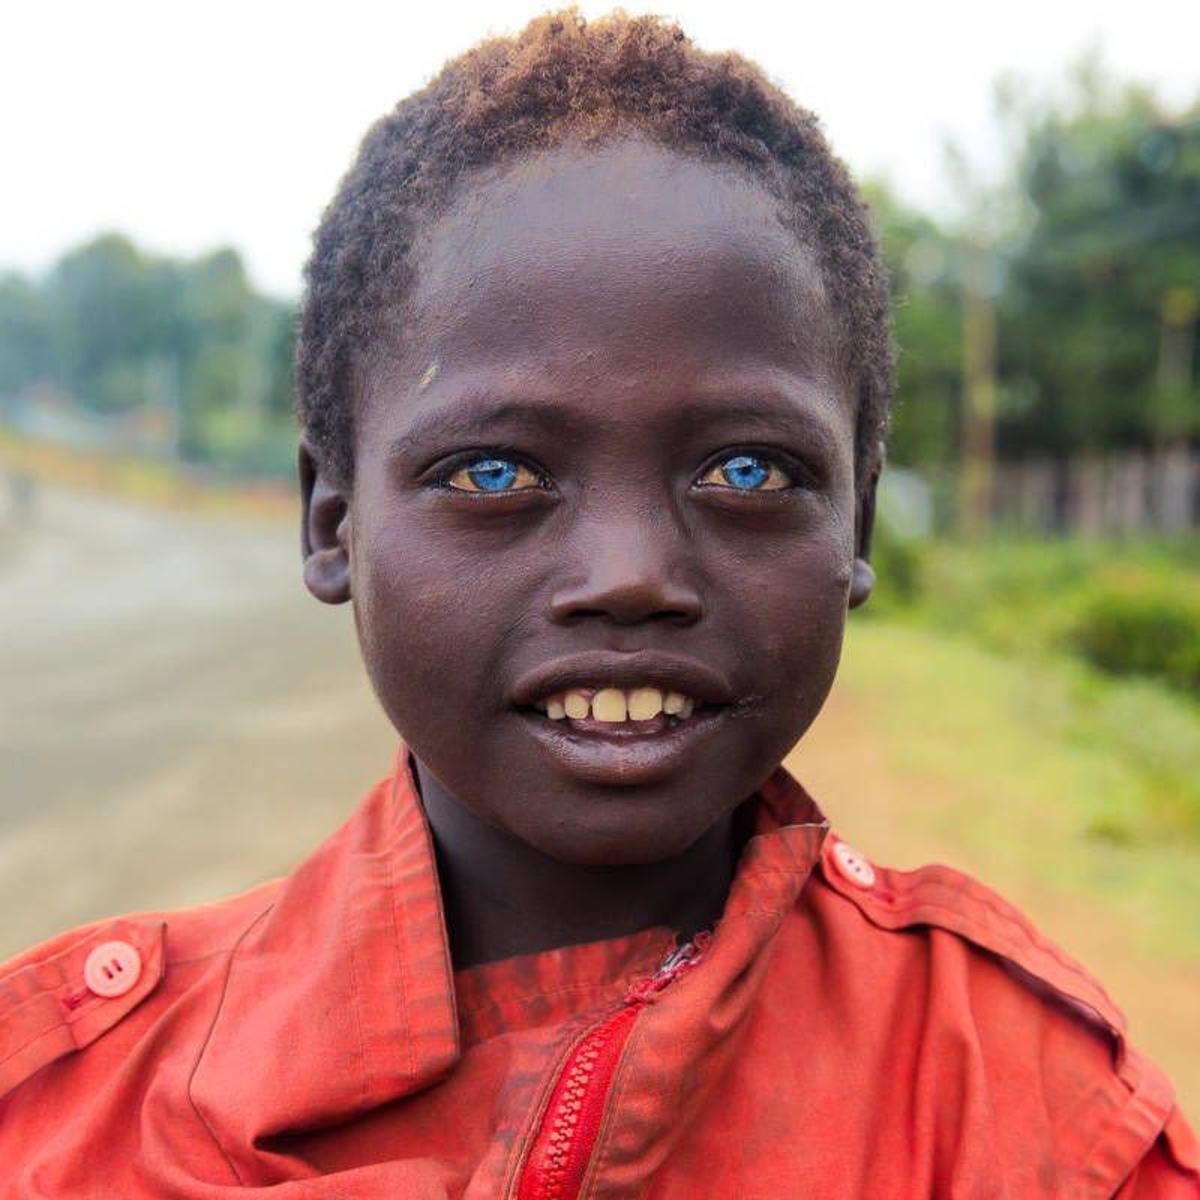 Африканцы с голубыми глазами